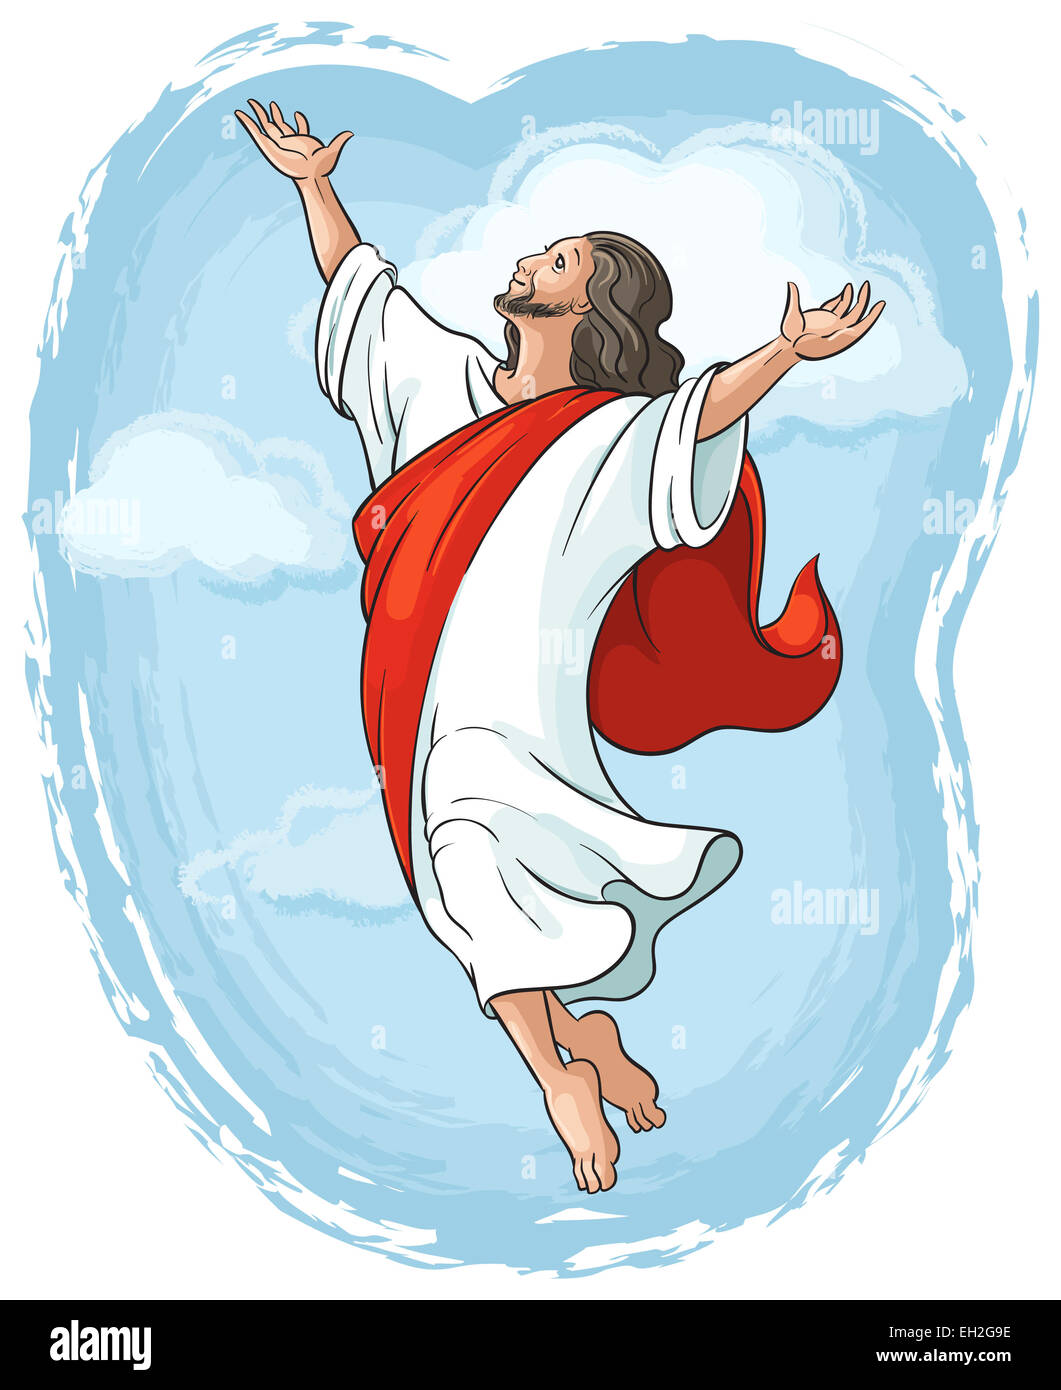 L'ascension de Jésus la mains à Dieu dans le ciel bleu entre les nuages. Cartoon illustration couleur chrétienne des événements dans la vie de Jésus Banque D'Images